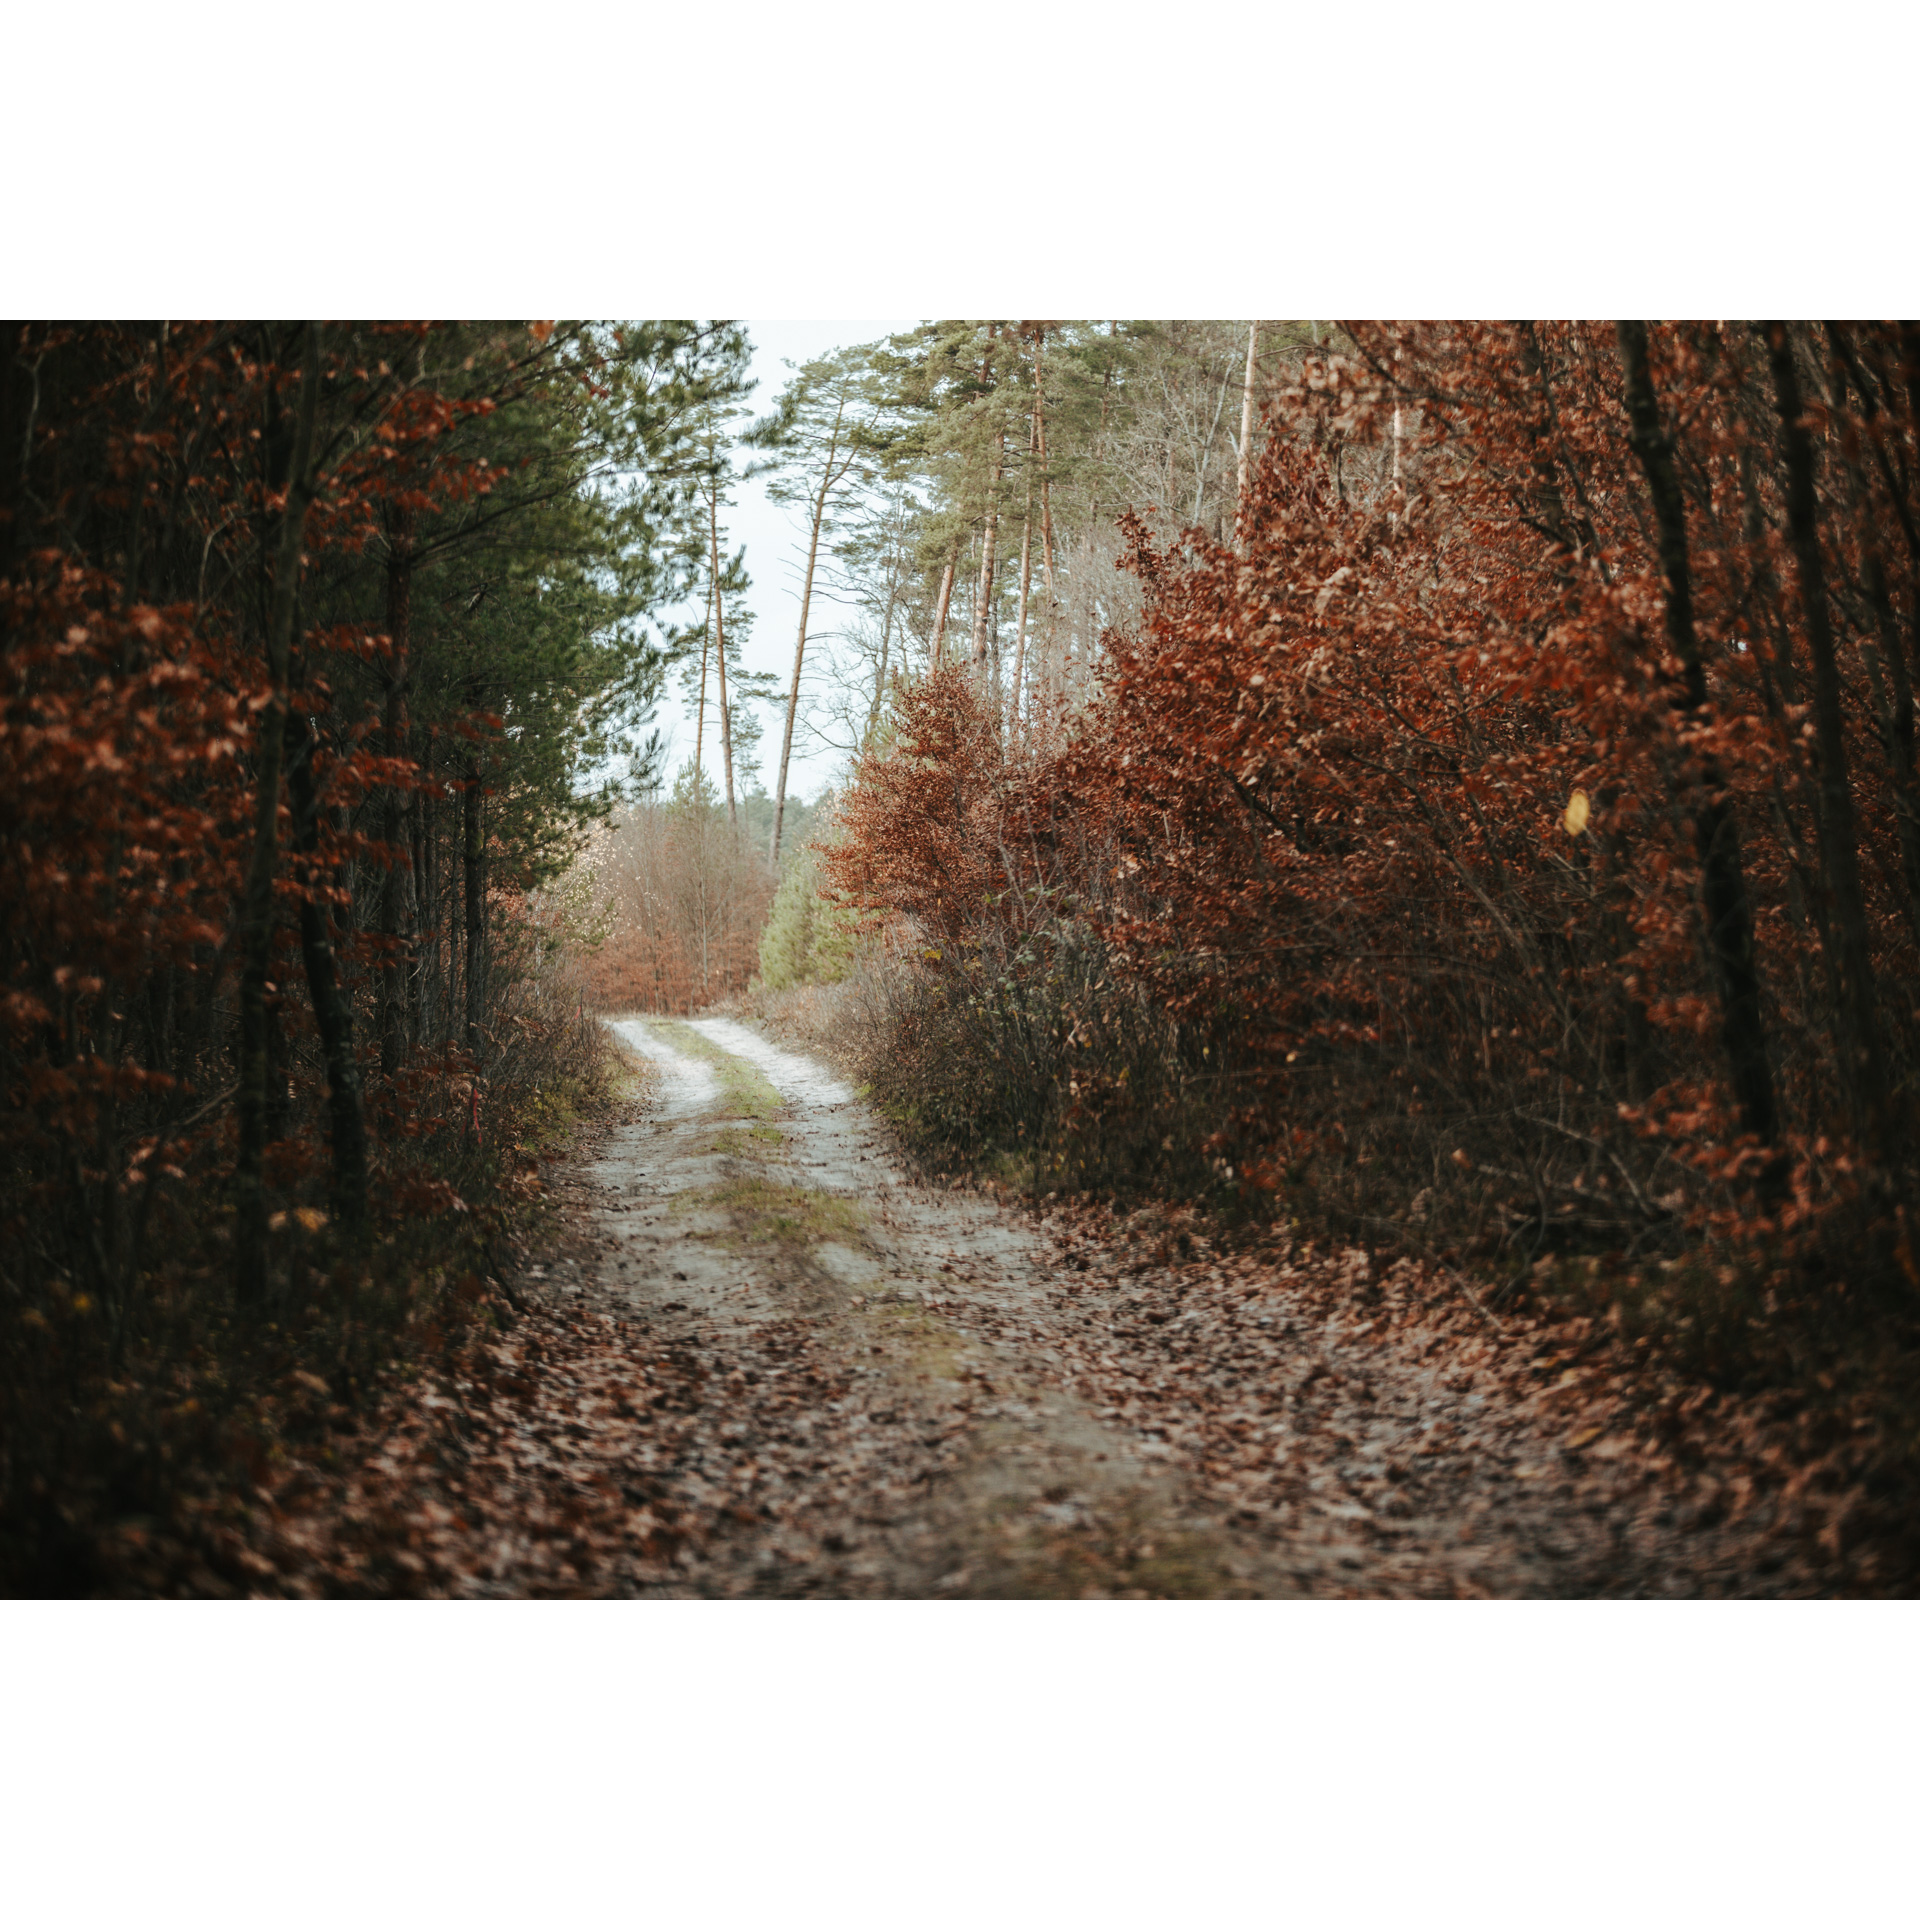 Leśna droga zasypana brązowo-bordowymi liśćmi z drzew rosnących na poboczach